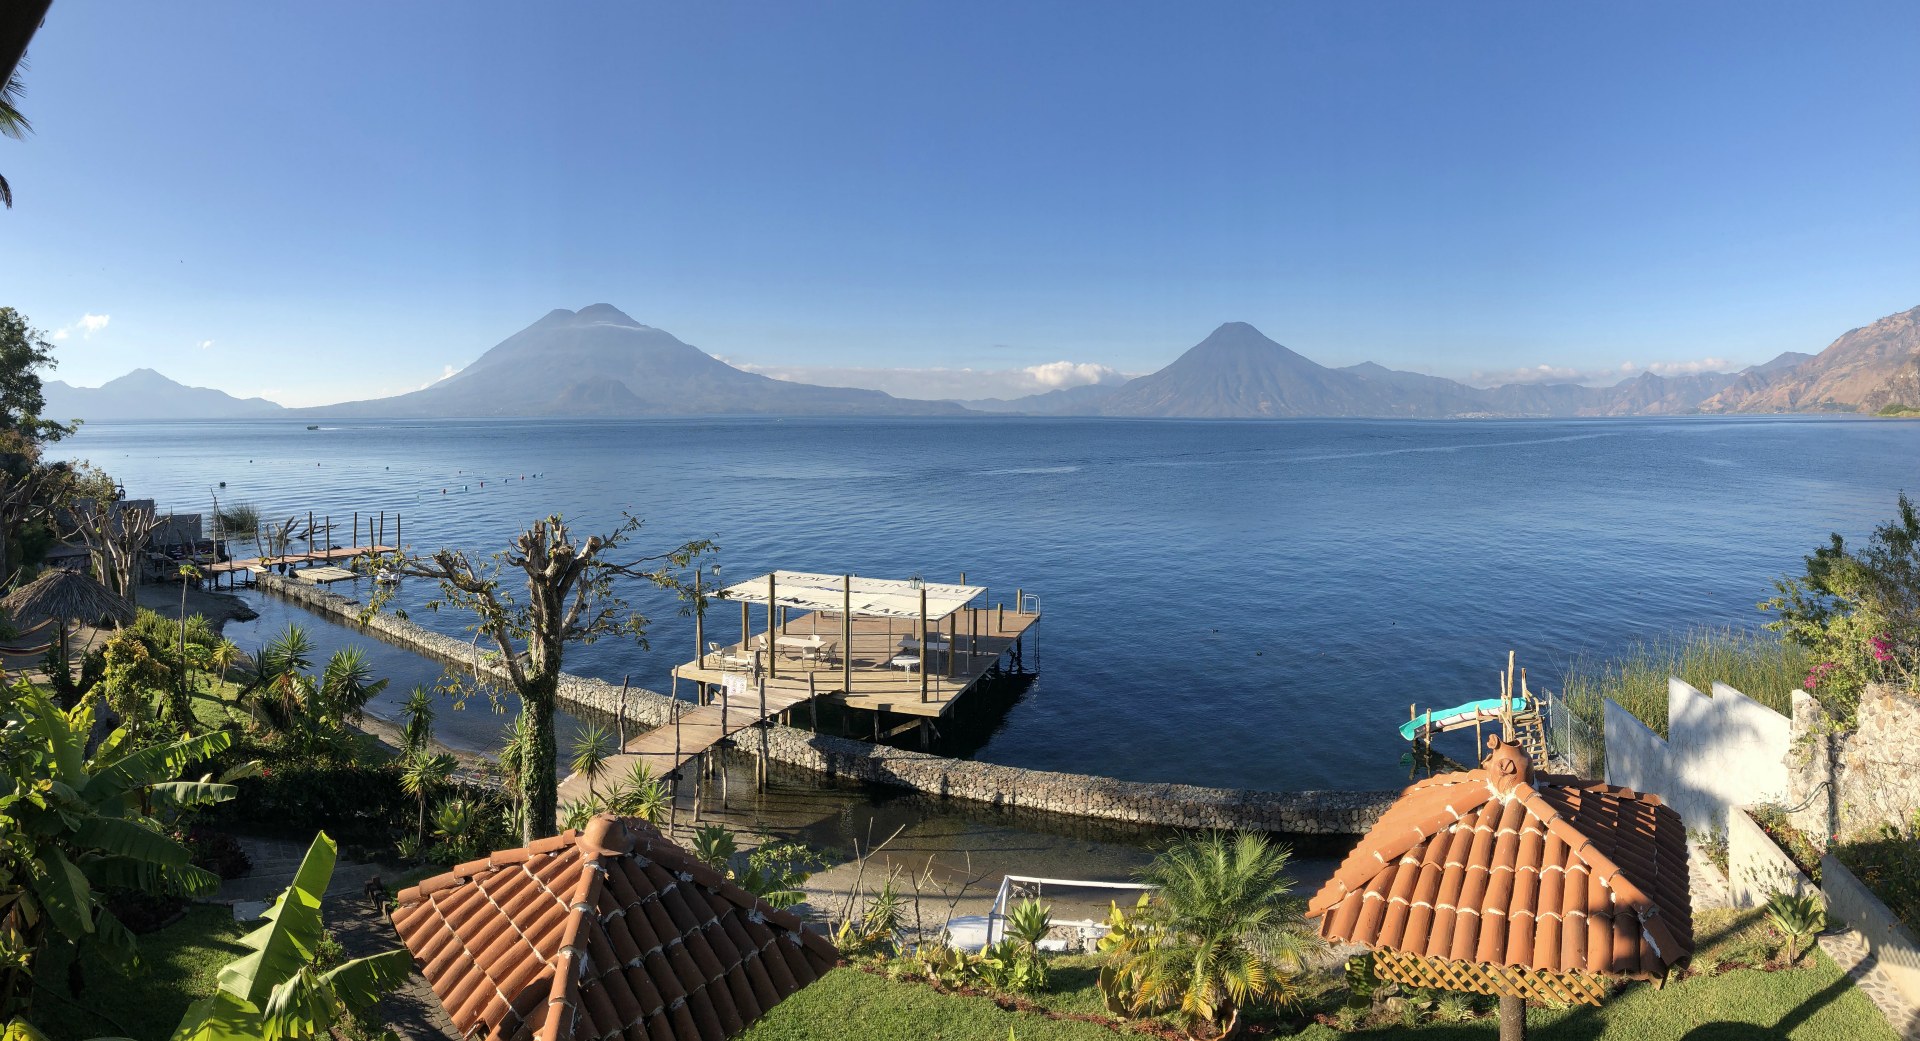 Lake Atitlan from Panajachel, Guatemala